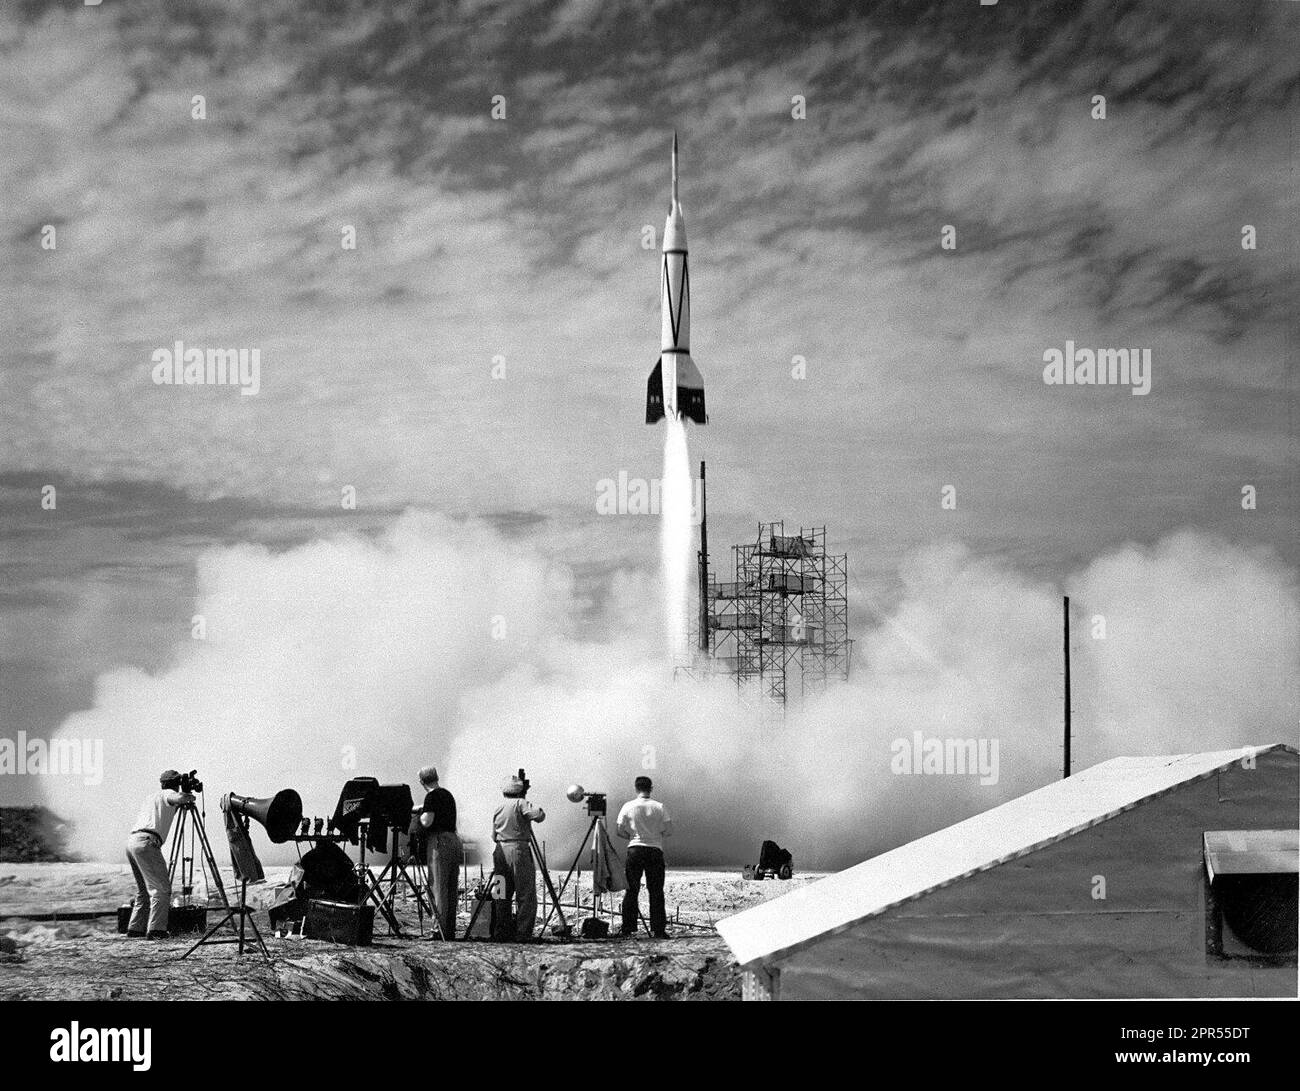 (24. Juli 1950) Ein neues Kapitel der Raumfahrt begann im Juli 1950 mit dem Start der ersten Rakete aus Cape Canaveral, Florida: Der Bumper 8. Wie oben gezeigt, war Bumper 8 ein ehrgeiziges zweistufiges Raketenprogramm, das eine V-2-Raketenbasis mit einer WAC-Korporalrakete überragte. Die obere Bühne erreichte damals Rekordhöhen von fast 400 Kilometern, höher als selbst moderne Space Shuttles heute fliegen. Bumper 8 wurde unter der Leitung der General Electric Company ins Leben gerufen und wurde in erster Linie für die Erprobung von Raketensystemen und für die Erforschung der oberen Atmosphäre verwendet. Raketen beförderten kleine Nutzlasten Stockfoto